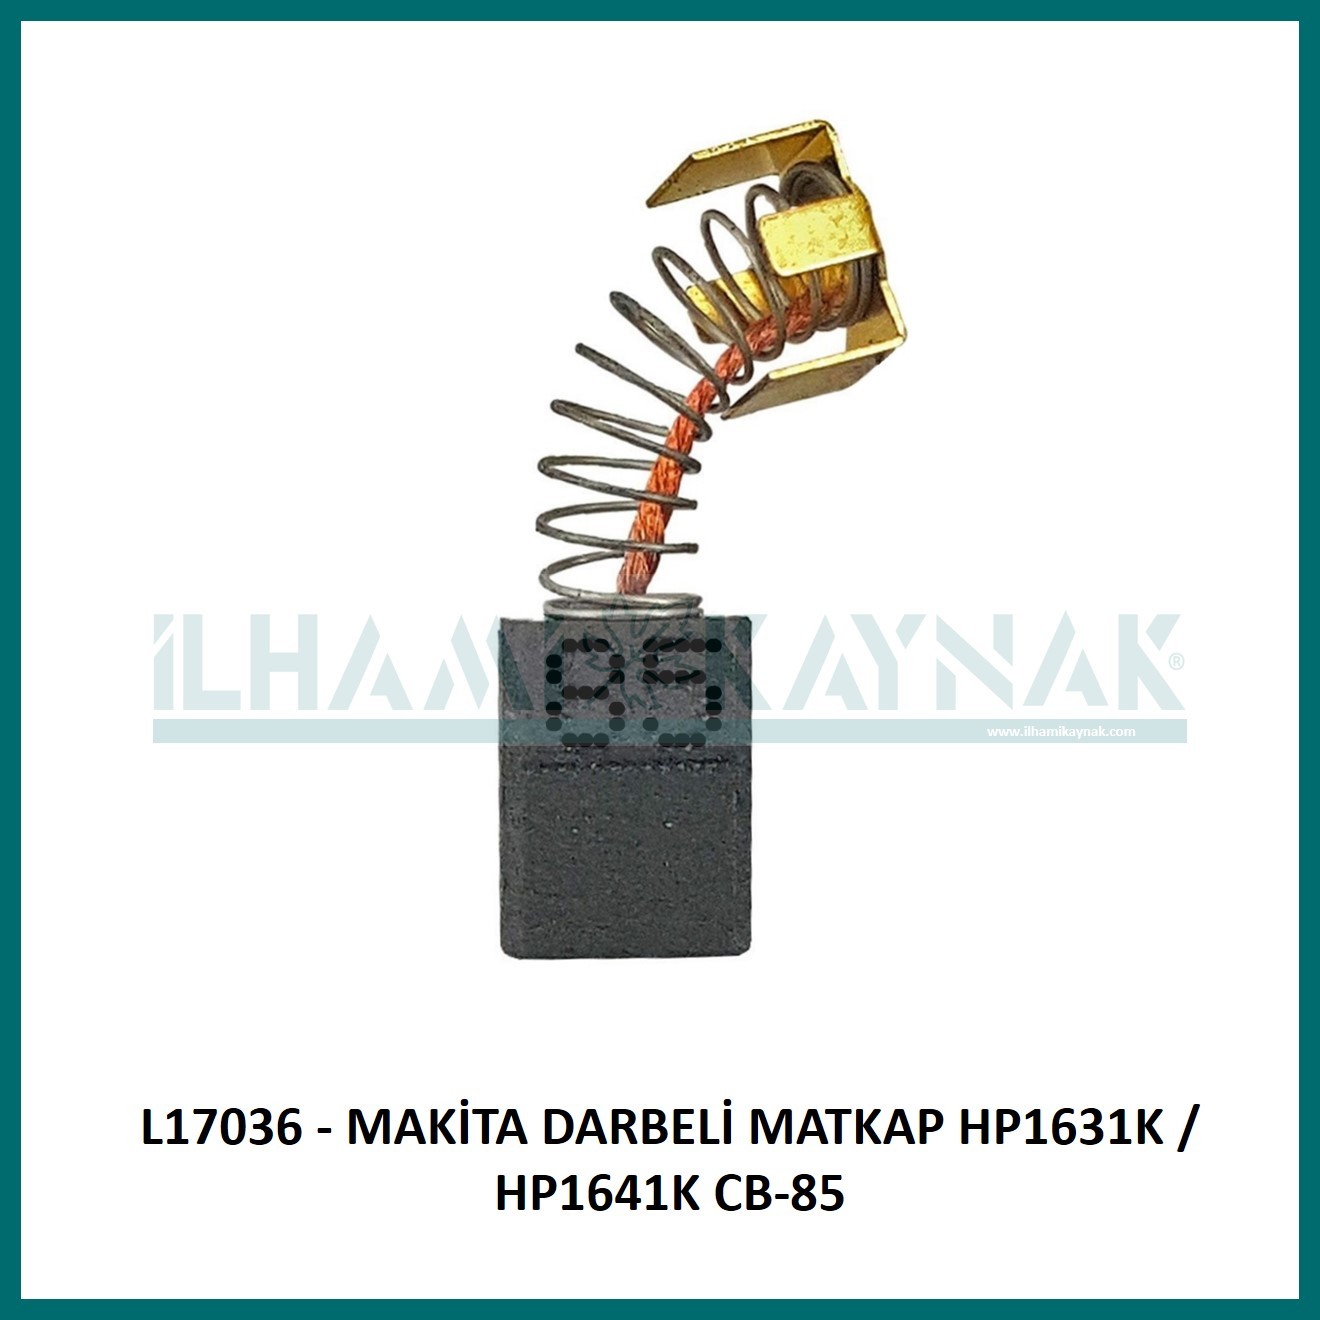 L17036 - MAKİTA DARBELİ MATKAP HP1631K / HP1641K CB-85 - 5*8*10.5 mm - 100 Adet